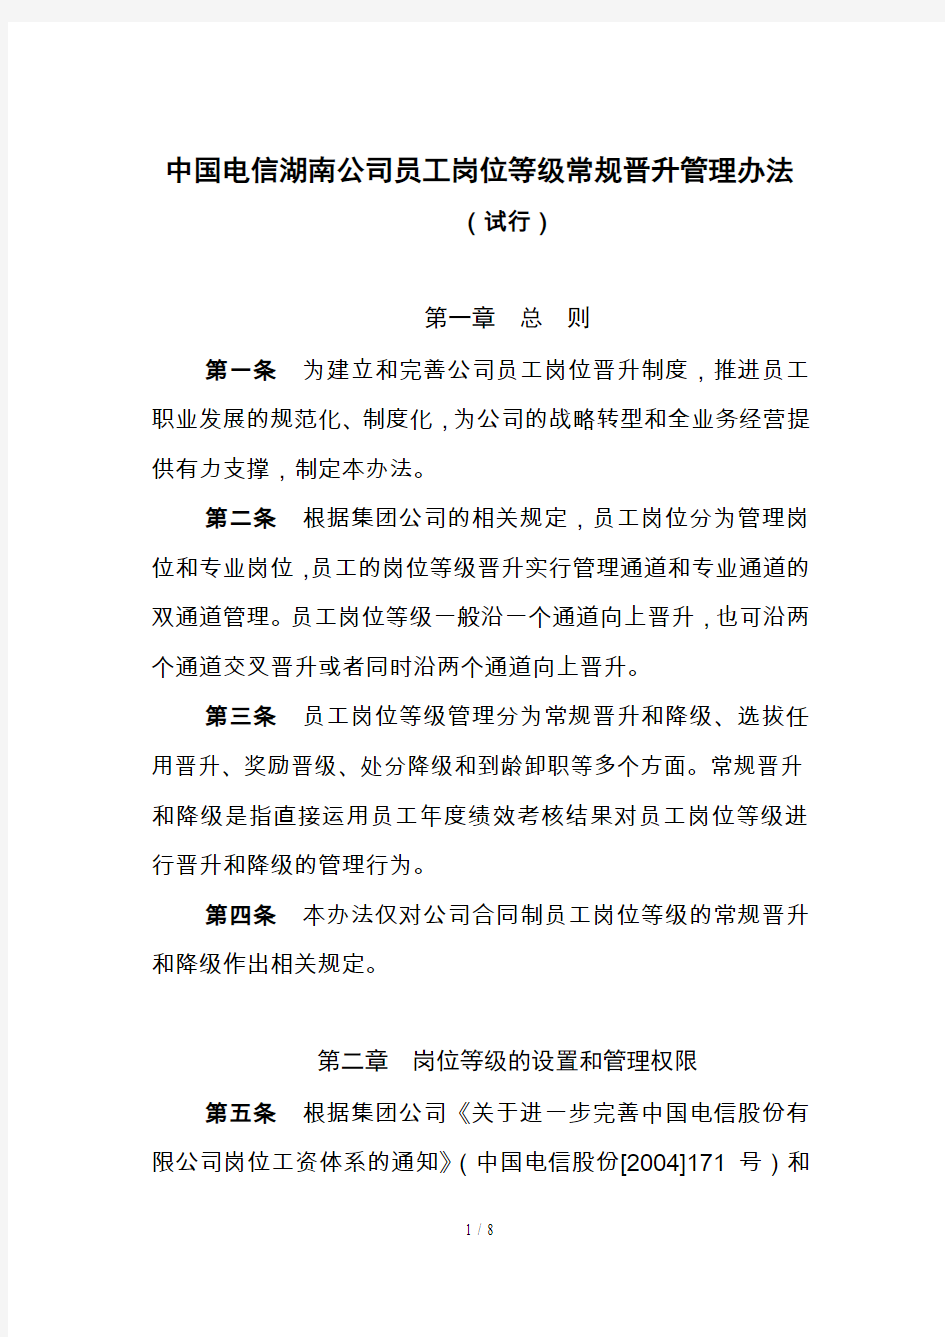 中国电信员工岗位等级常规晋升管理办法